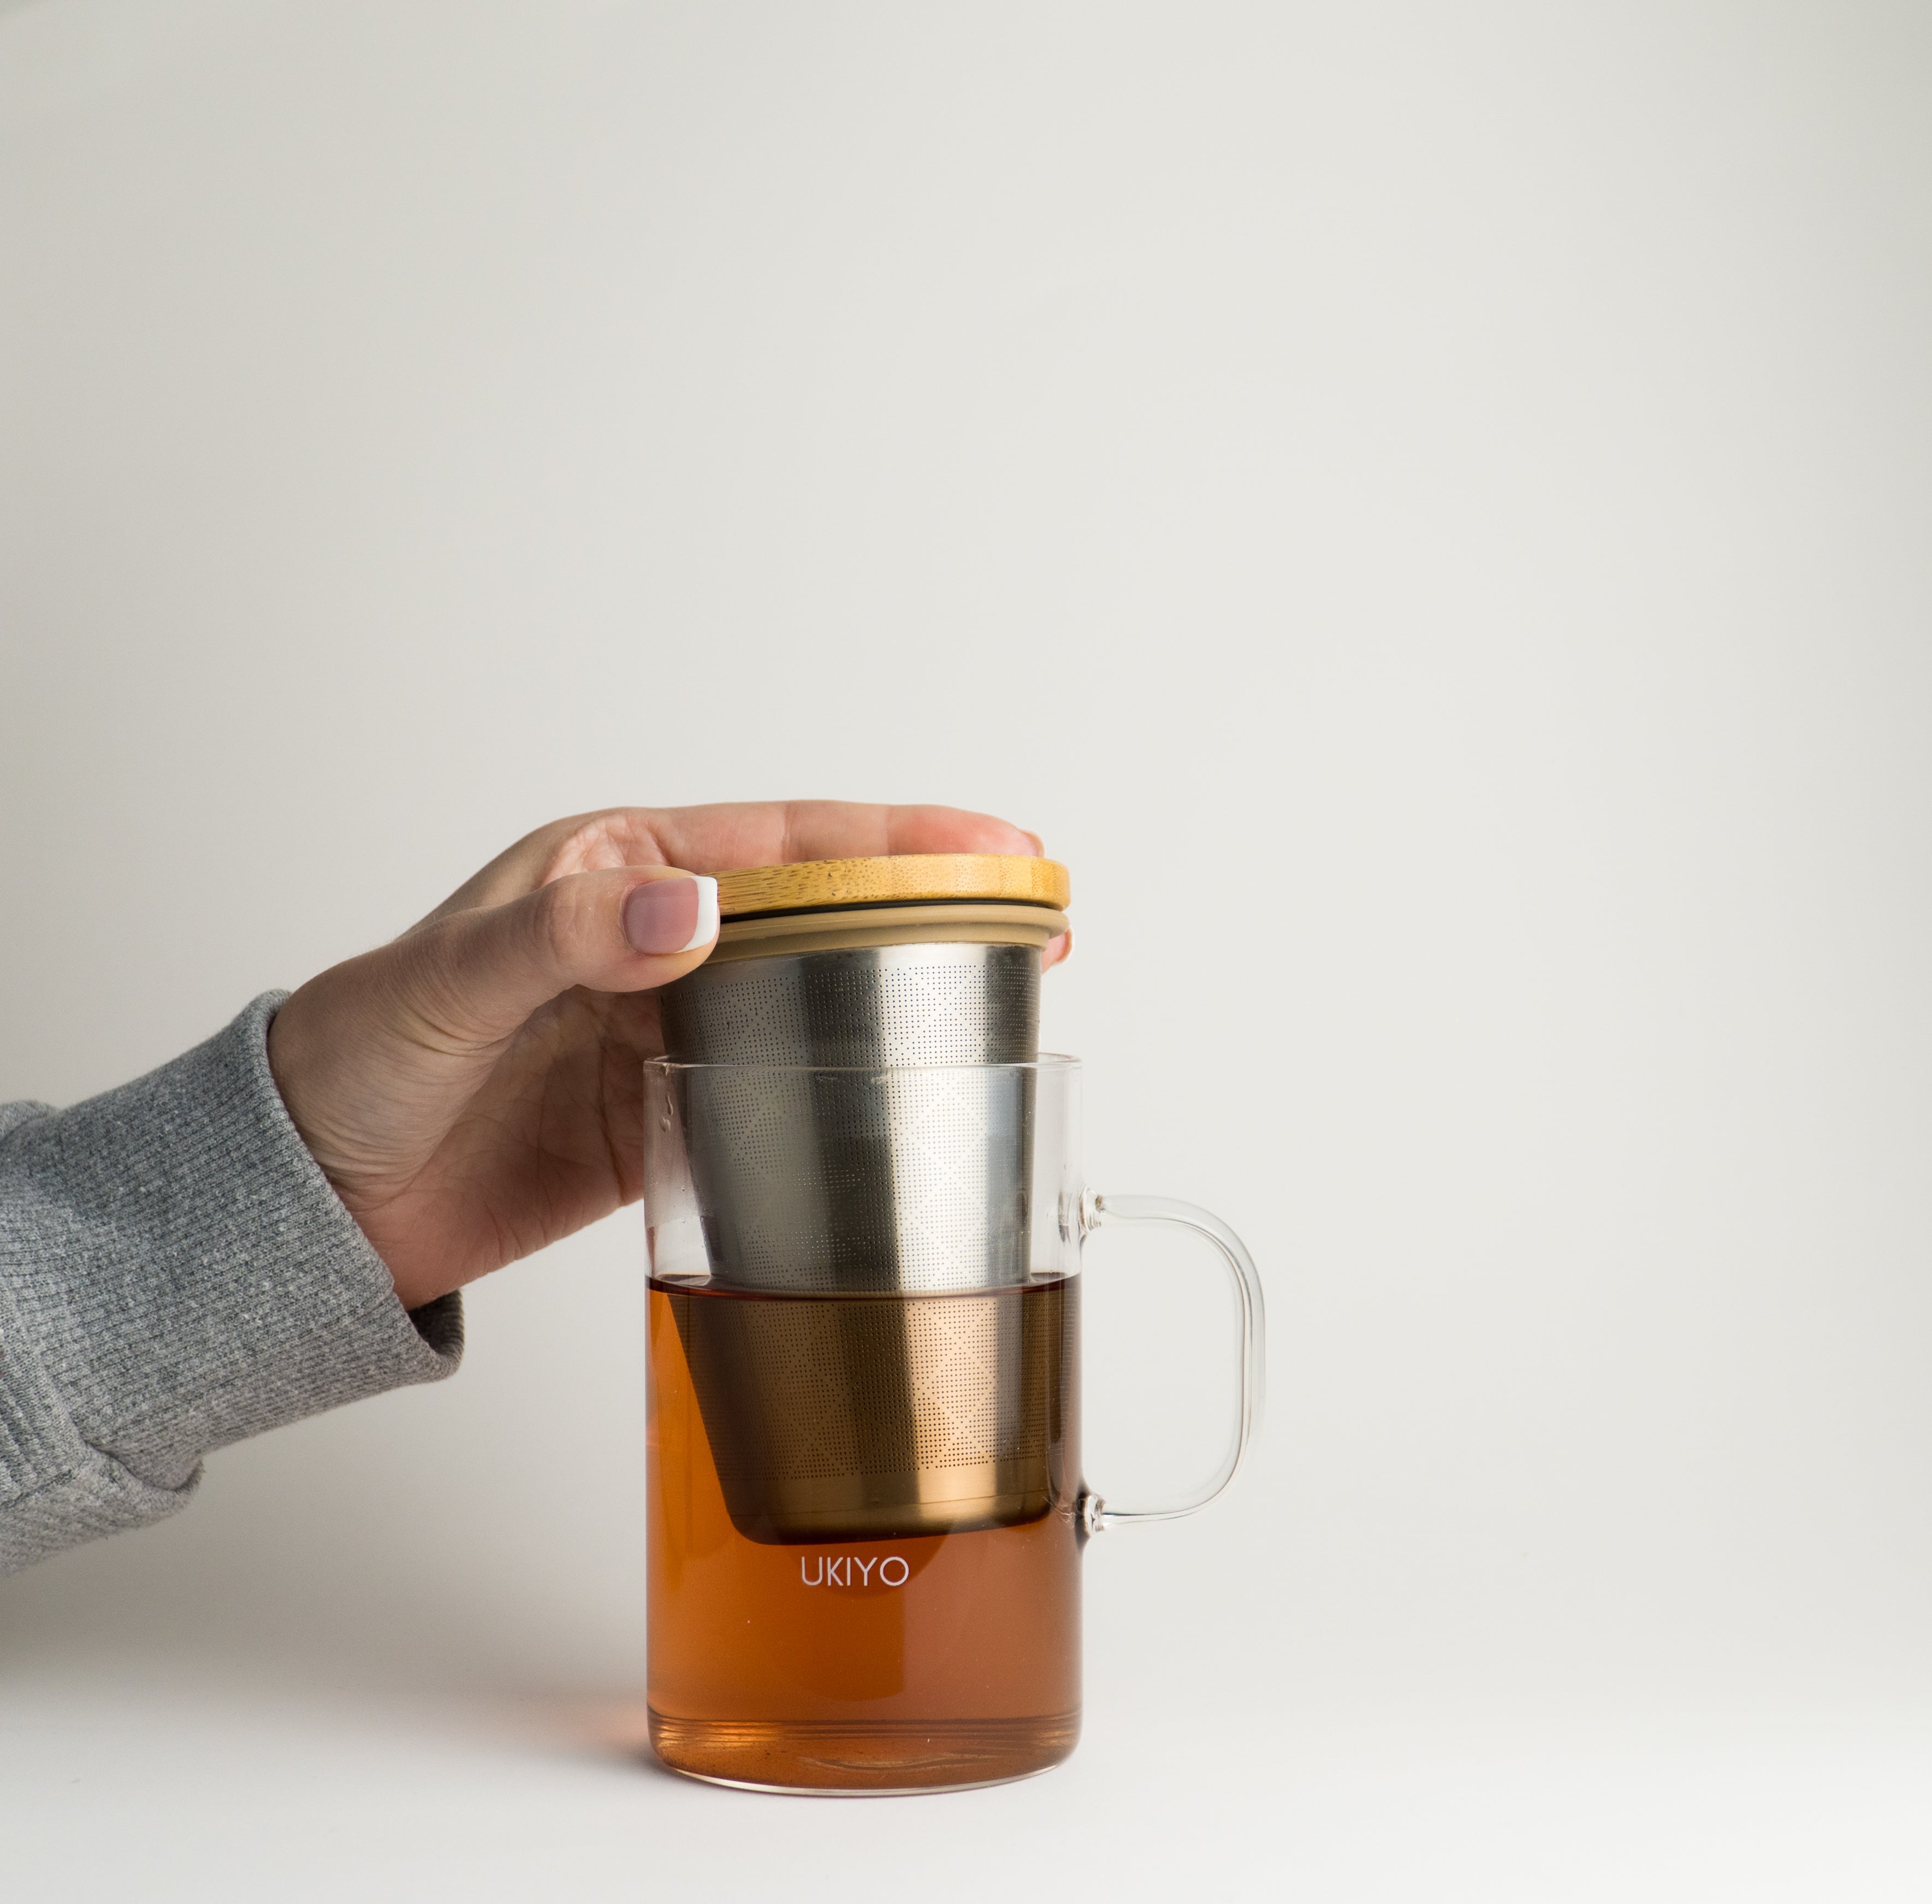 Ukiyo Wood - Glass & Stainless Steel Tea Infuser